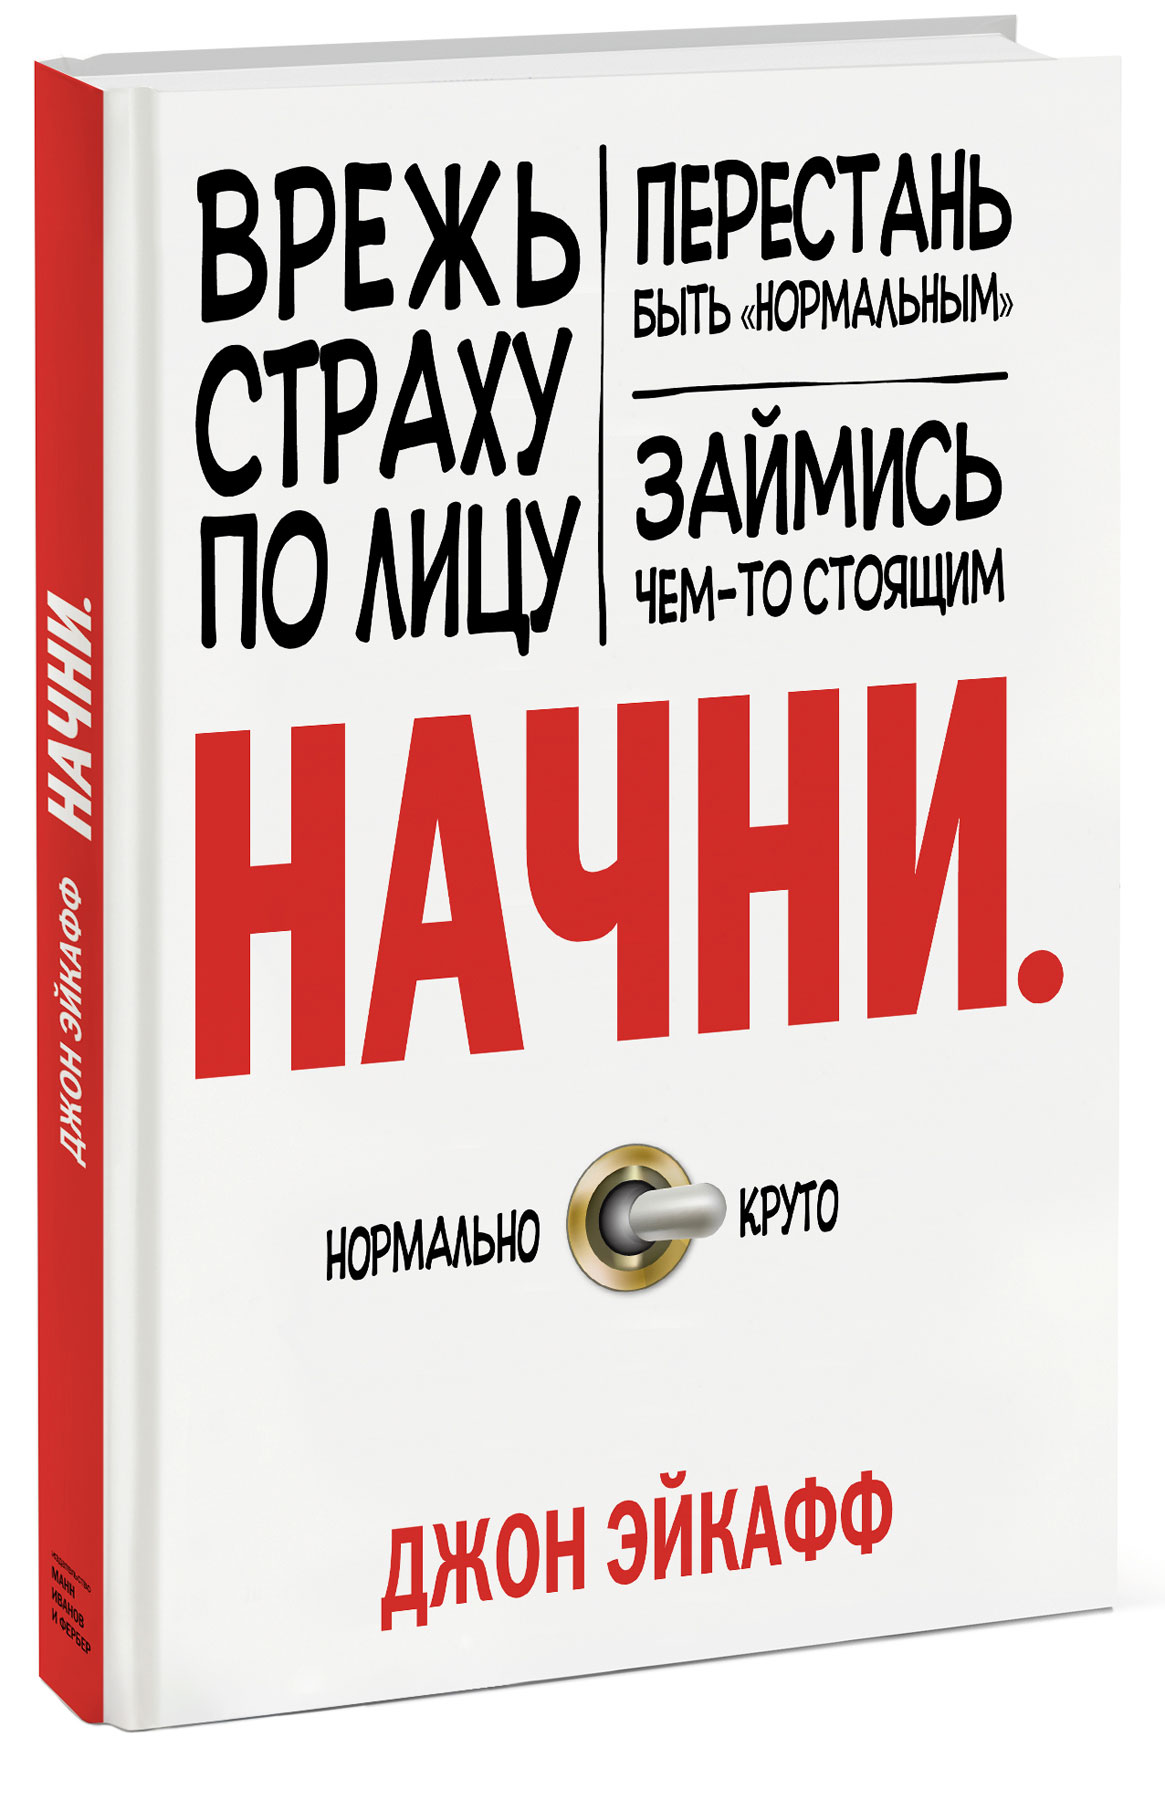 Книга Начни. Врежь страху по лицу, перестань быть "нормальным" и займись чем-то стоящим - купить книгу начни. врежь страху по лицу, перестань быть "нормальным" и займись чем-то стоящим от Джон Эйкафф в книжном интернет магазине OZON.ru с доставкой по выгодной цене